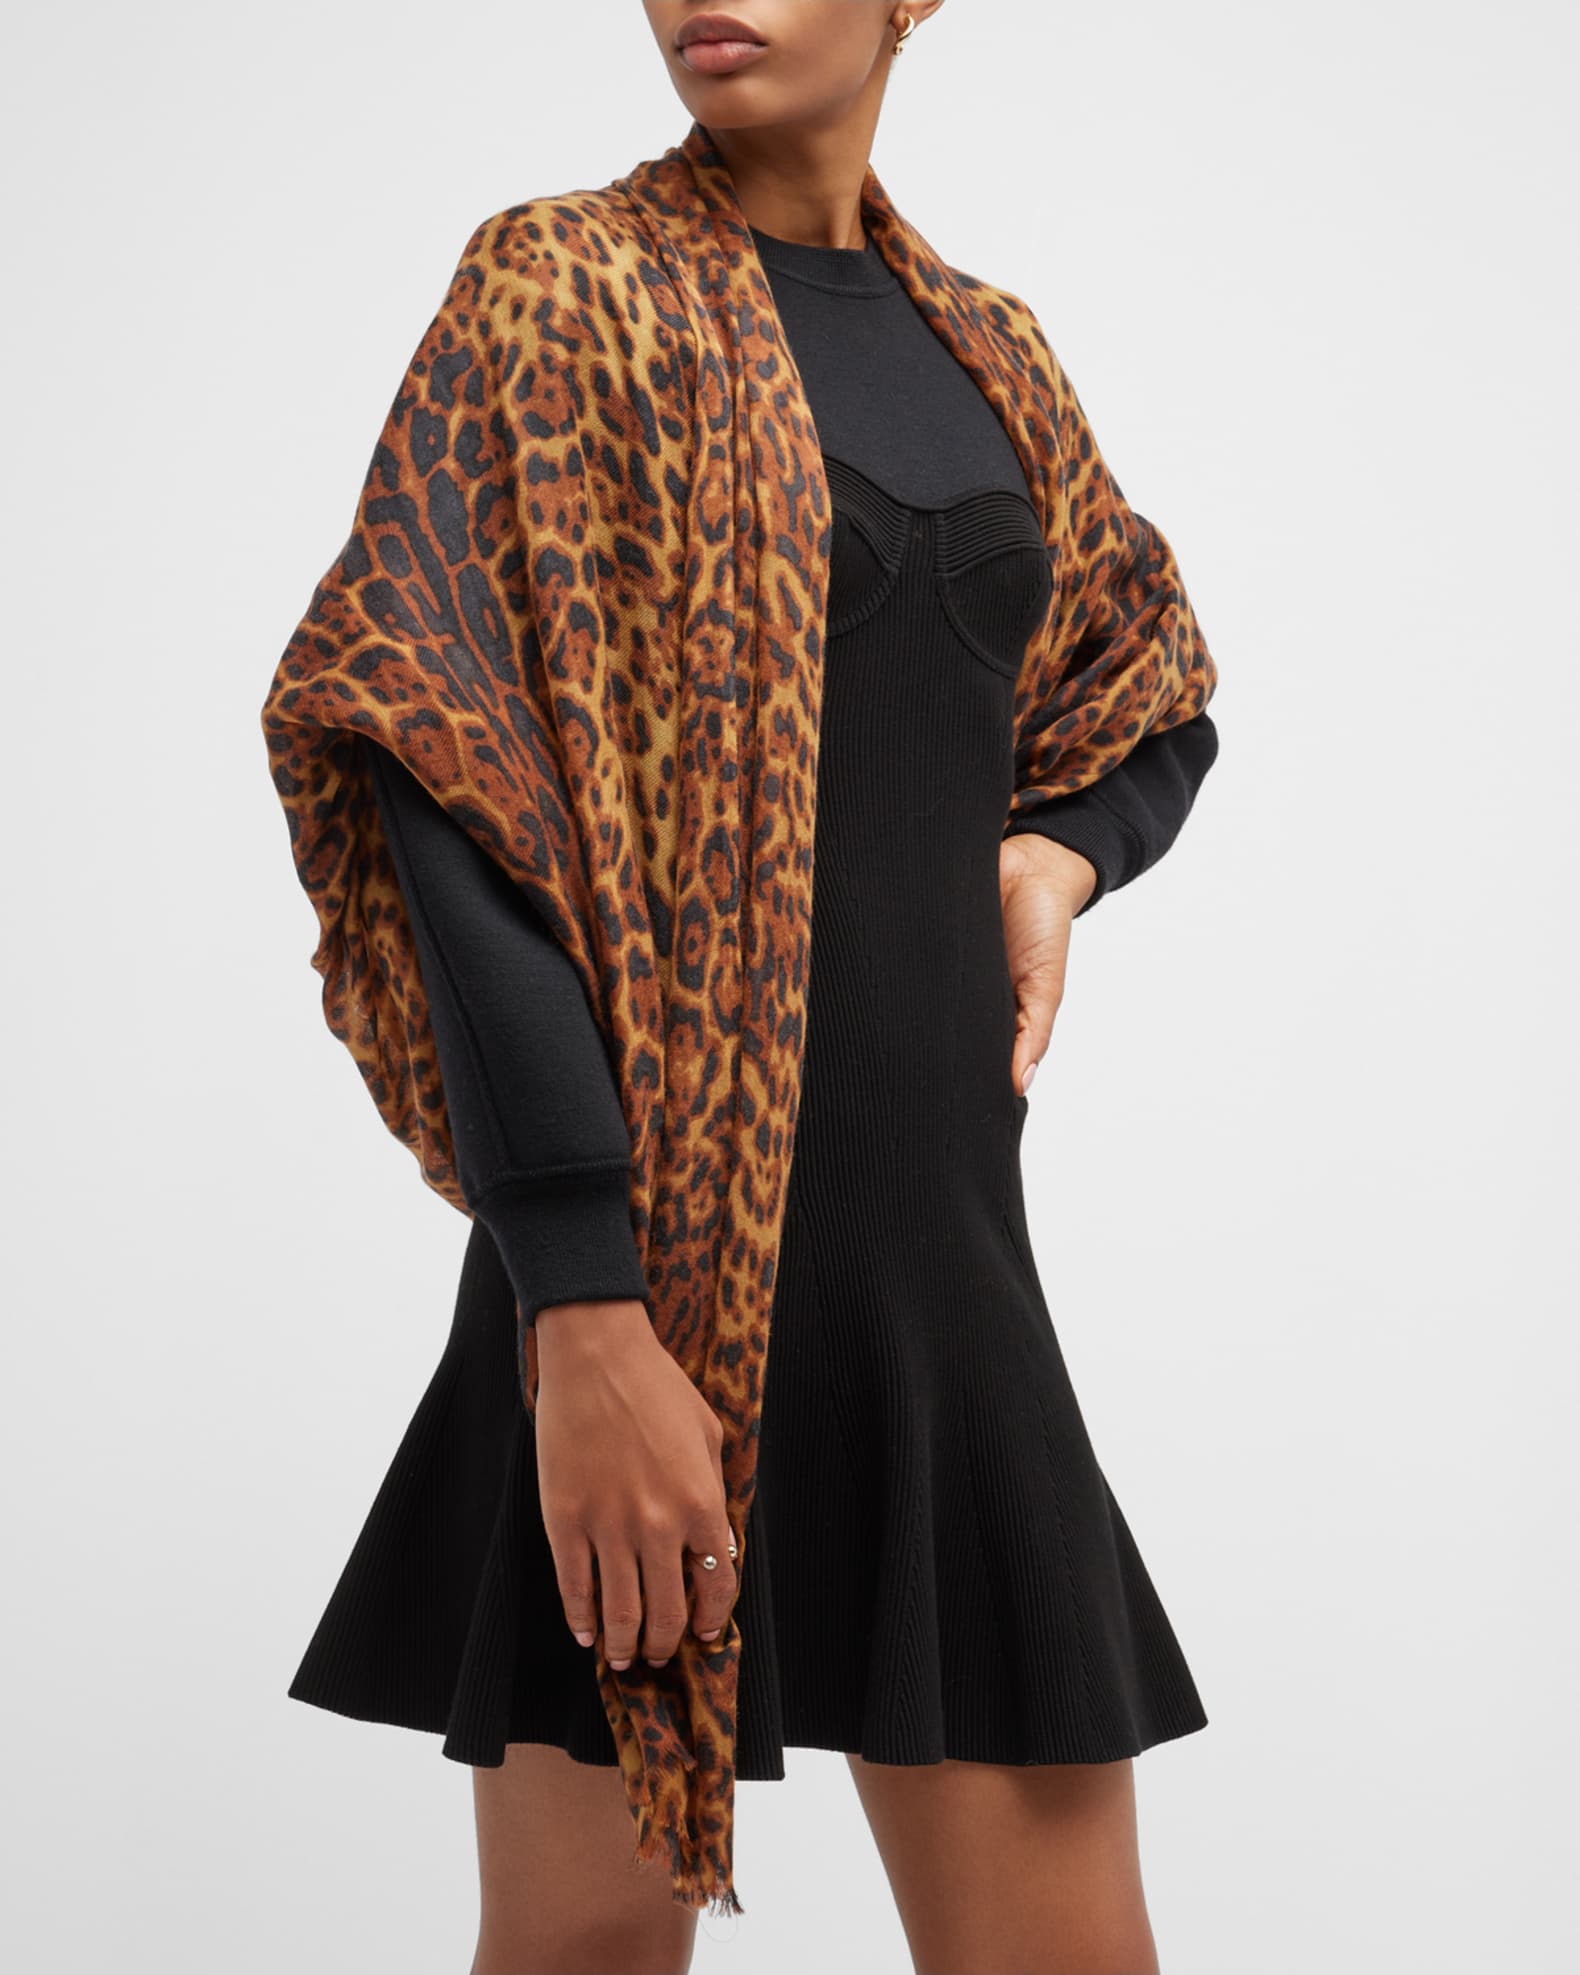 Leopard Love Wool Shawl – Scarflings® Sheer Sophistication